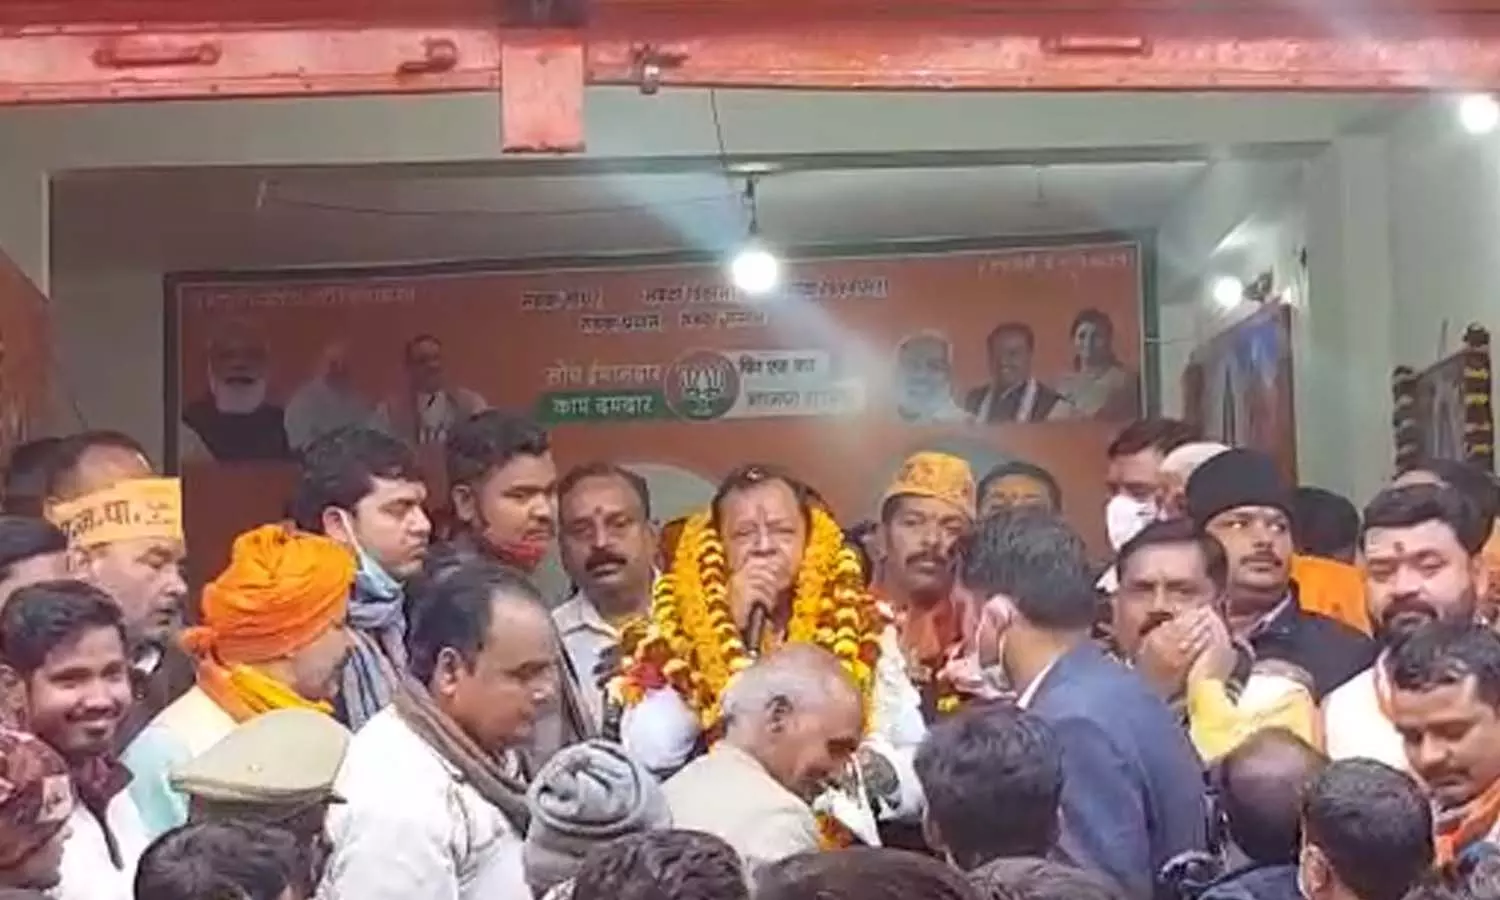 UP Election 2022: कैबिनेट मंत्री राजेंद्र प्रताप सिंह उर्फ़ मोती सिंह ने किया नामांकन, बोले- पट्टी में फिर खिलेगा कमल